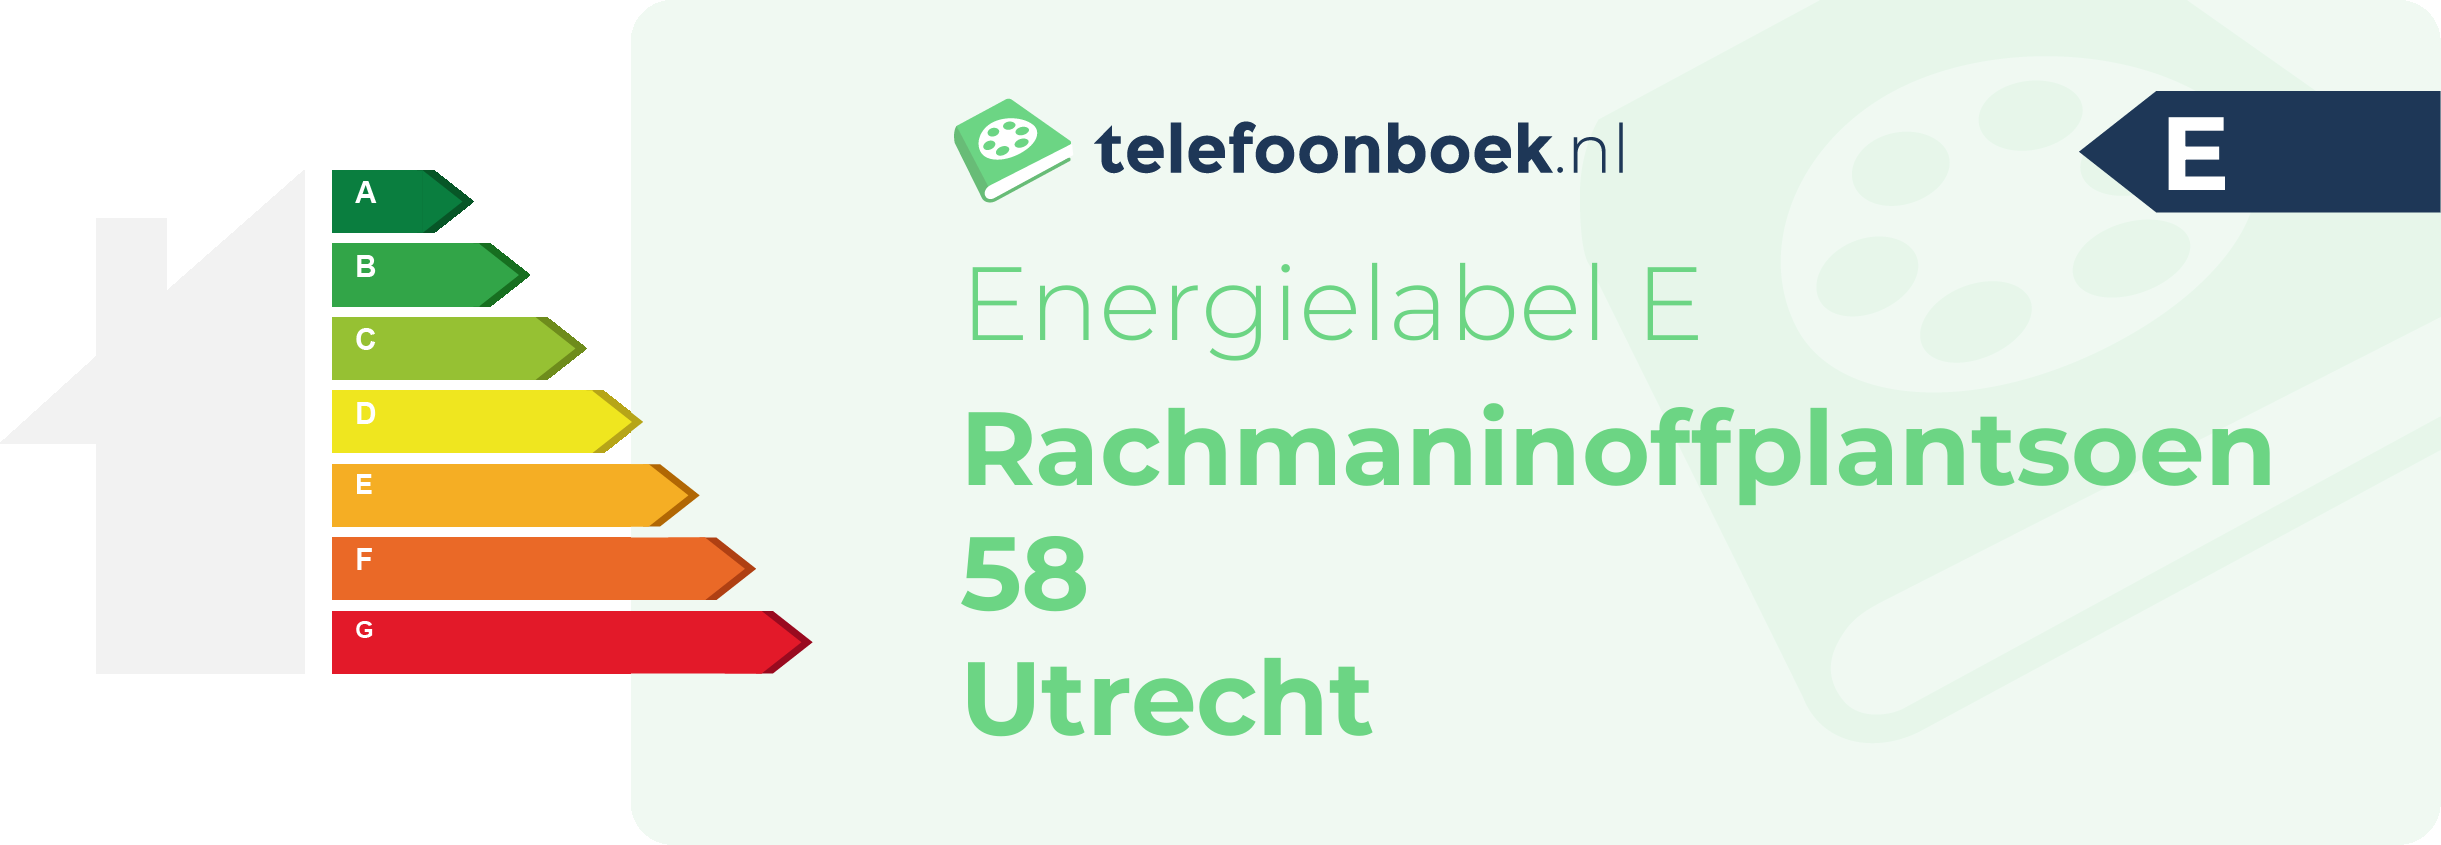 Energielabel Rachmaninoffplantsoen 58 Utrecht